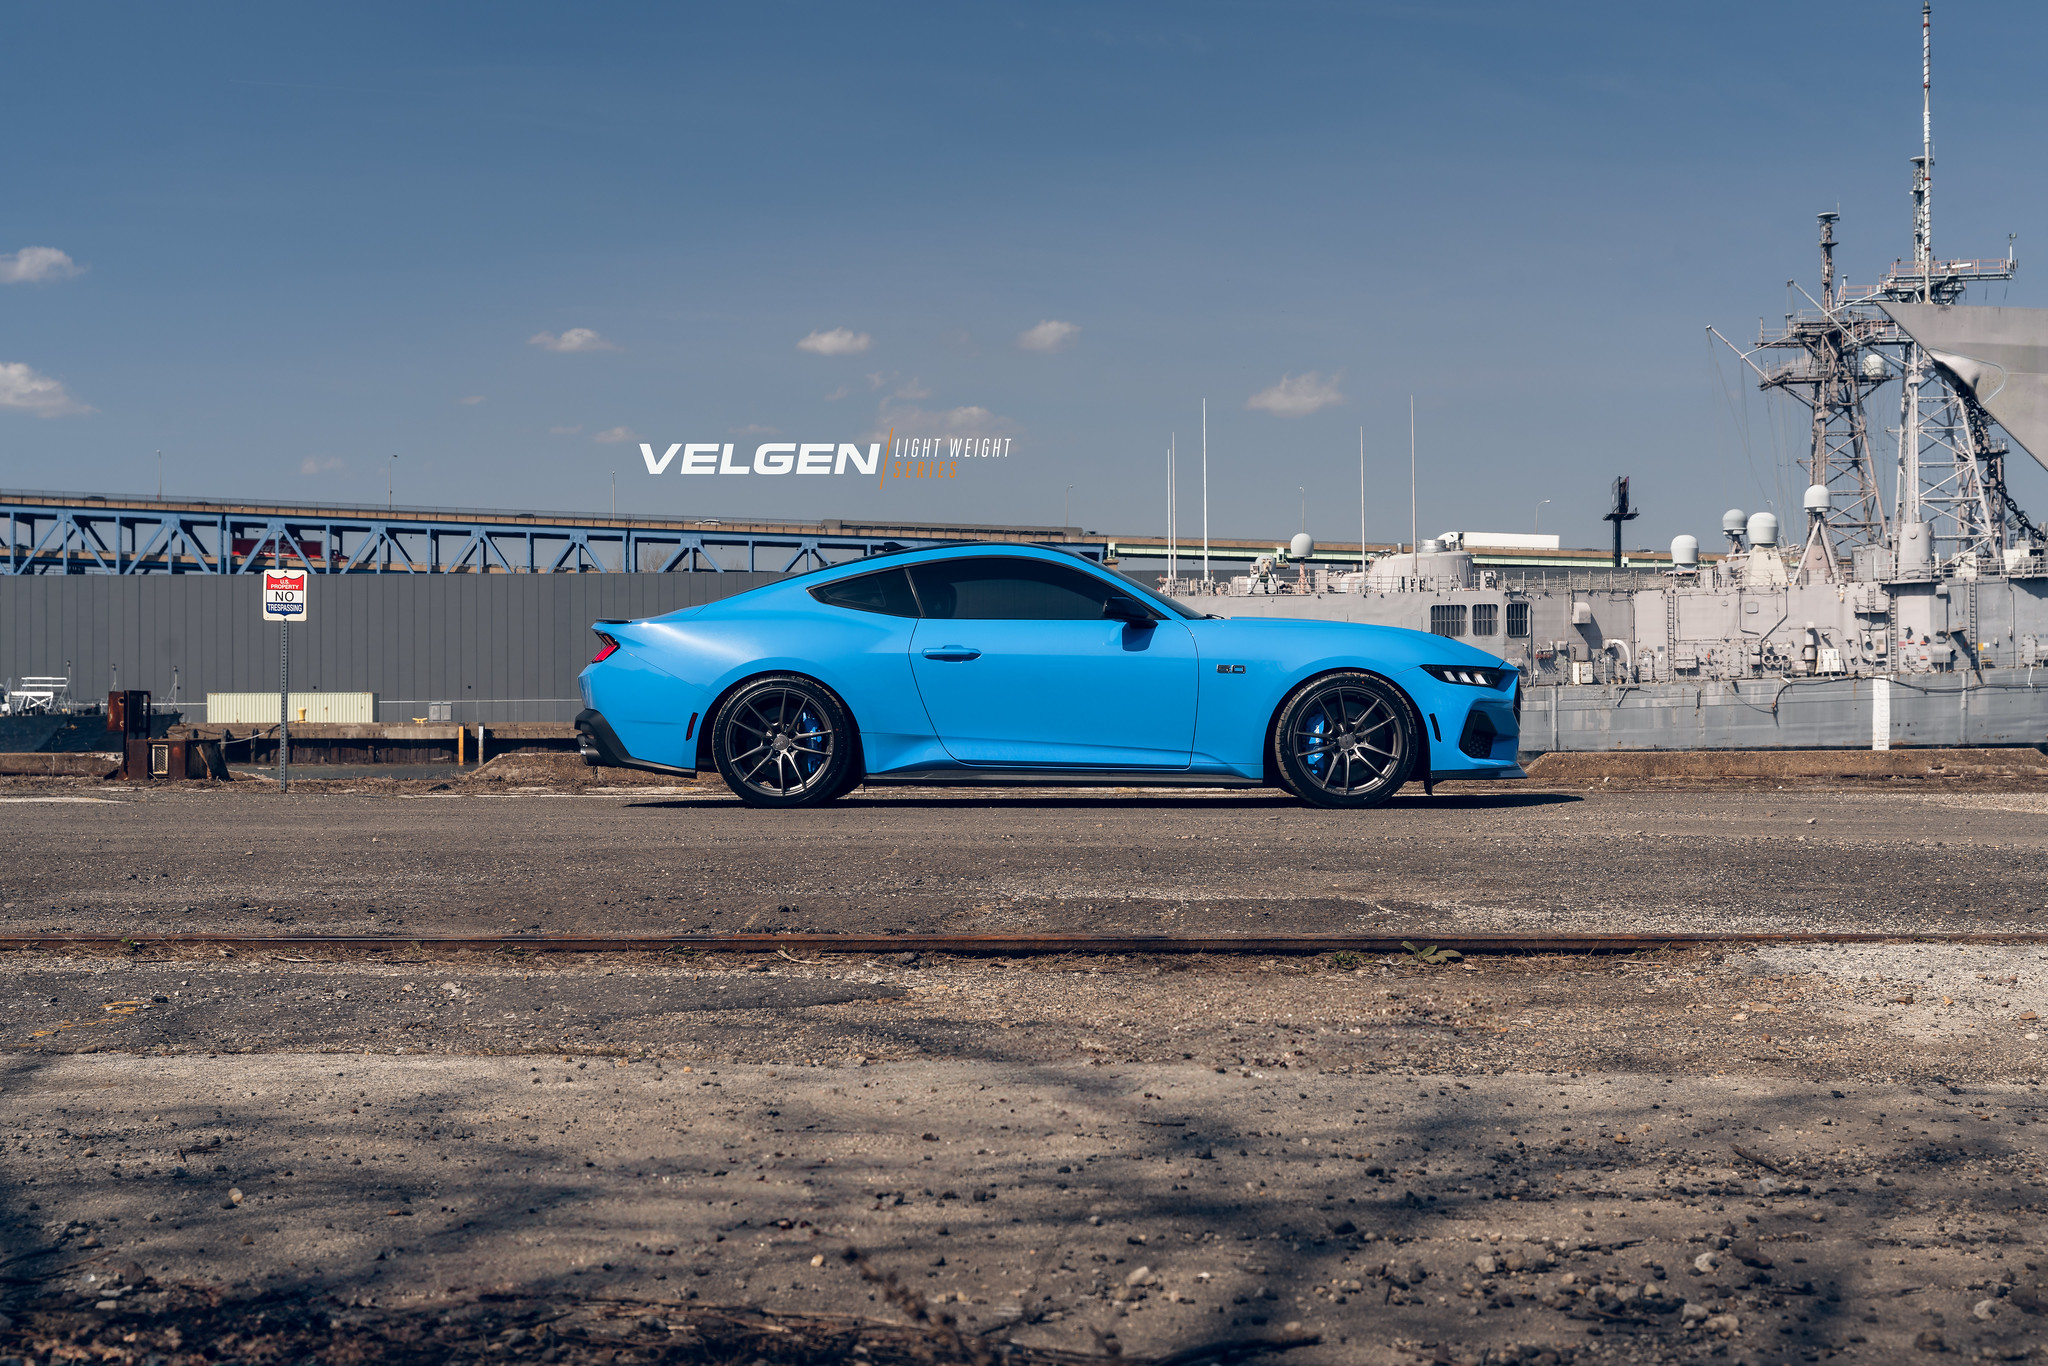 S650 Mustang Velgen wheels for your S650 Mustang | Vibe Motorsports 53602411110_3bdeadbcf1_k